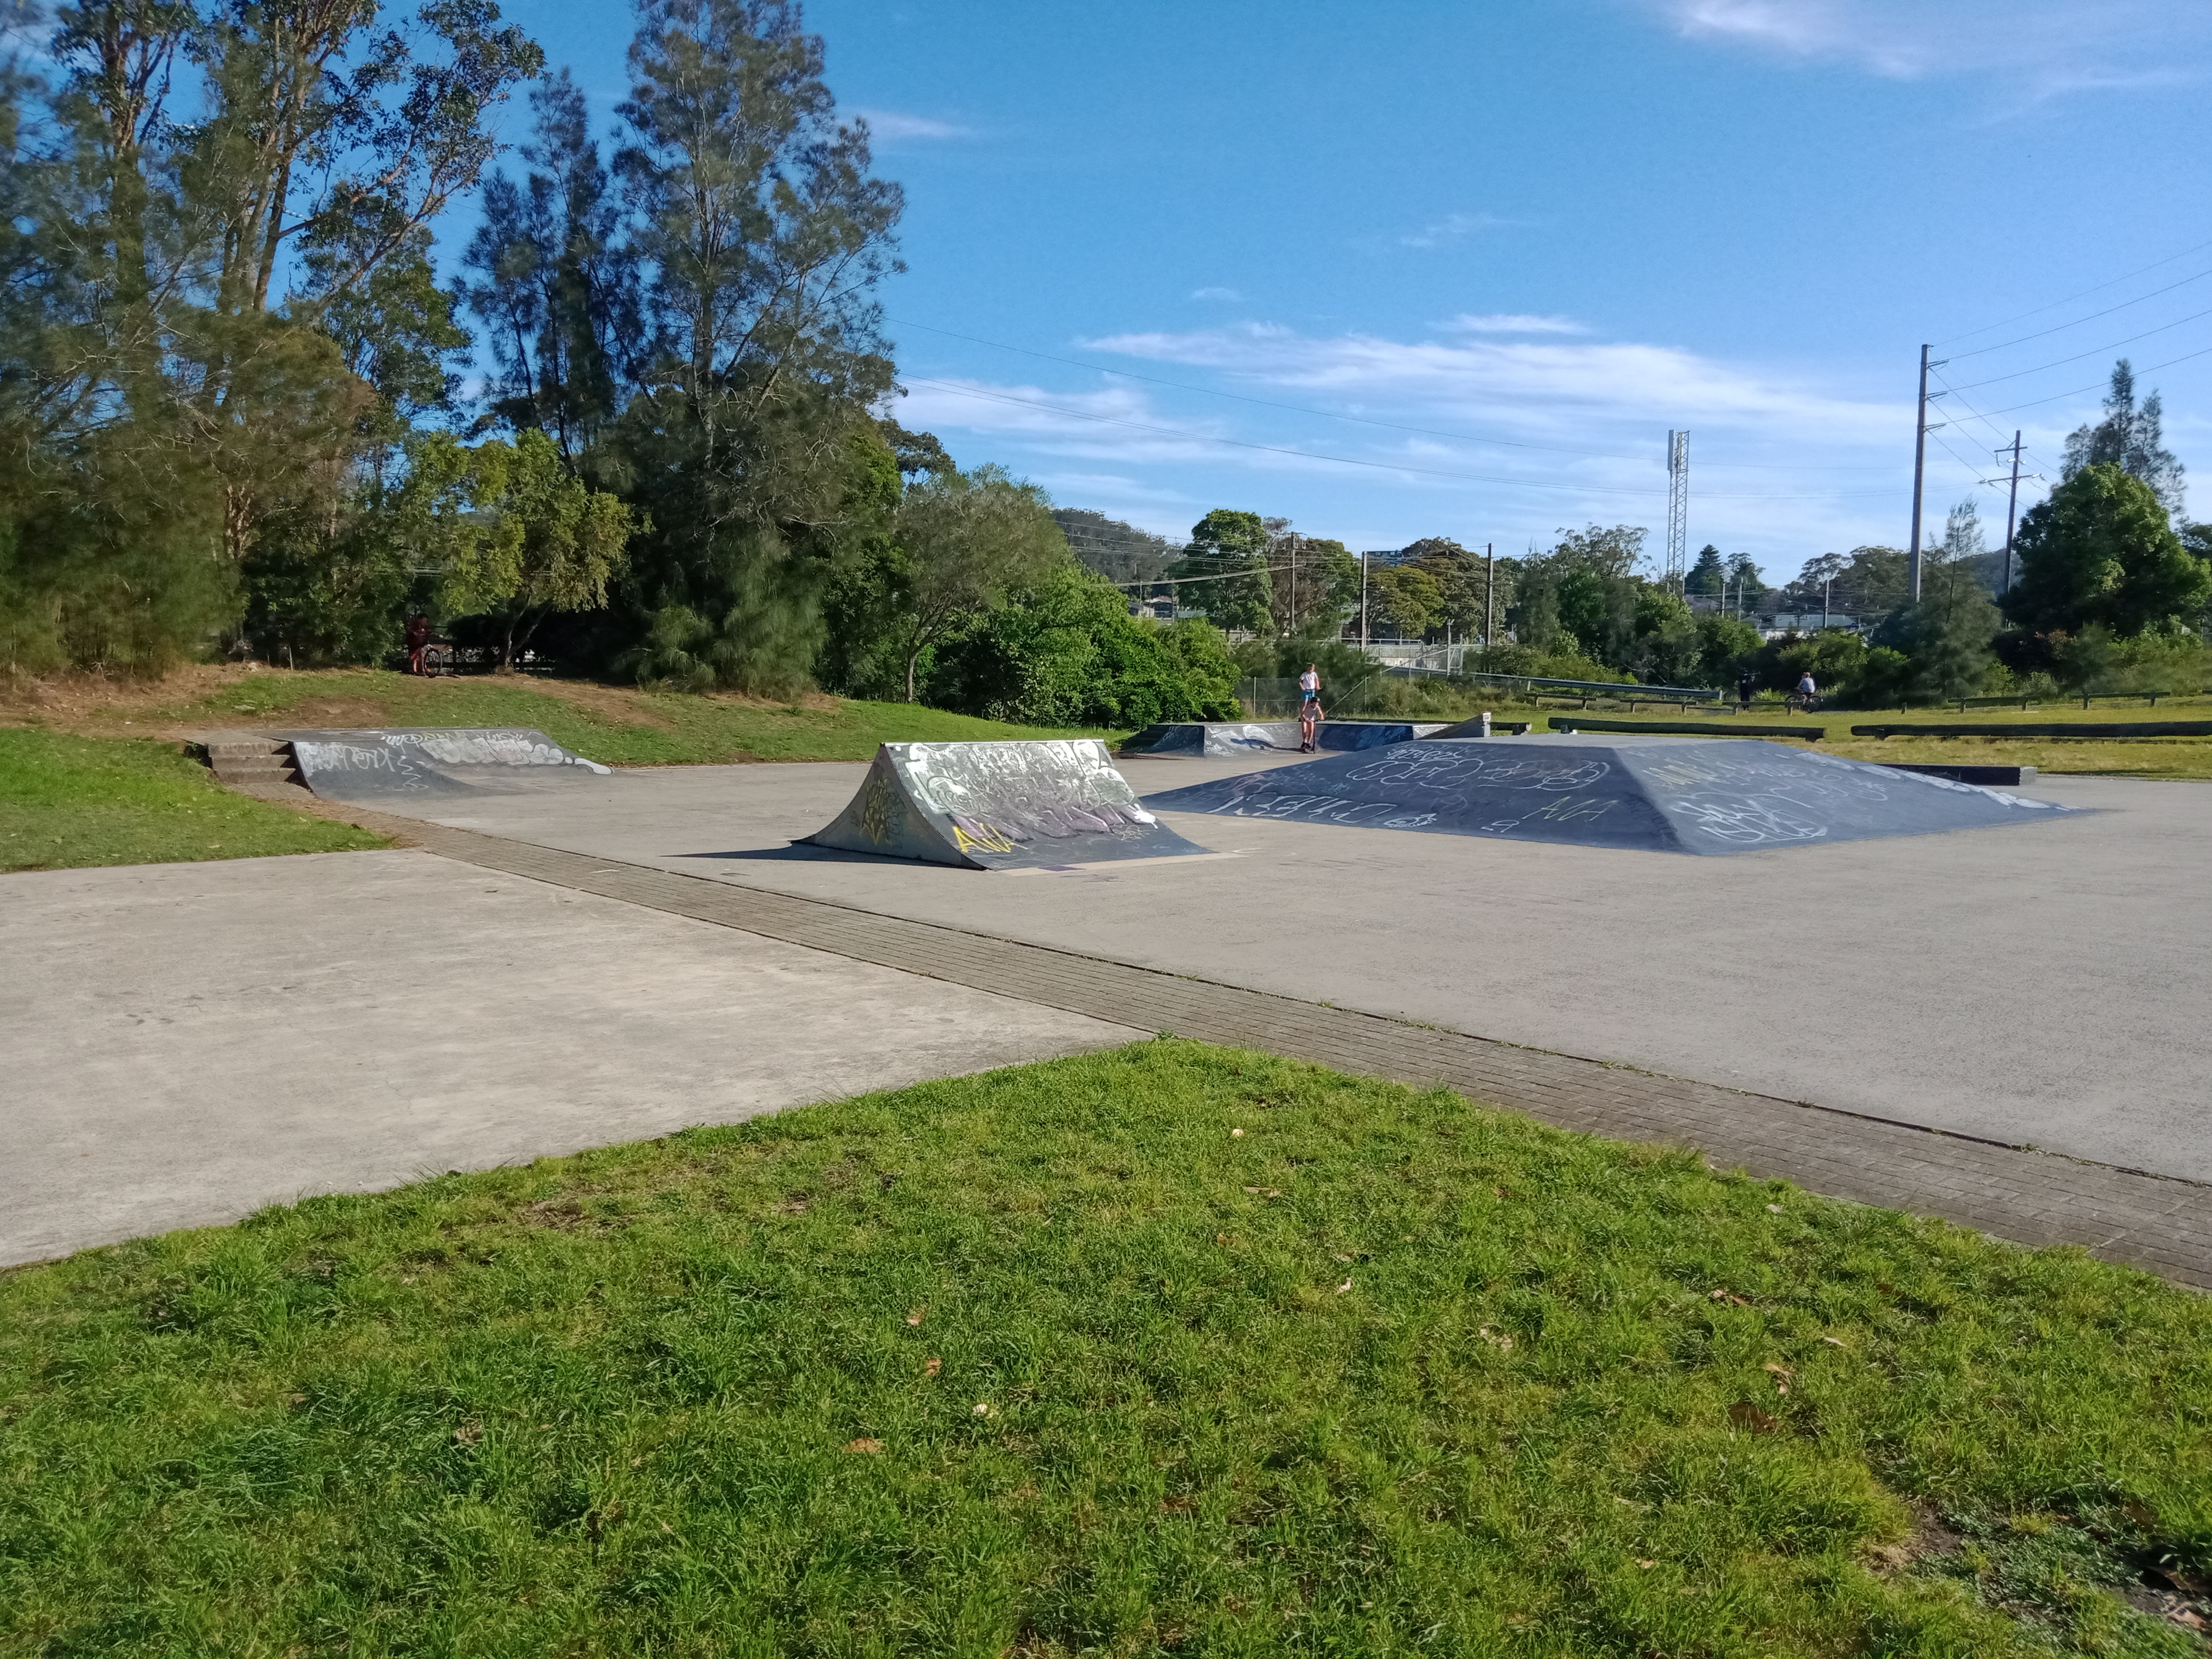 Narara original skate park built 1996